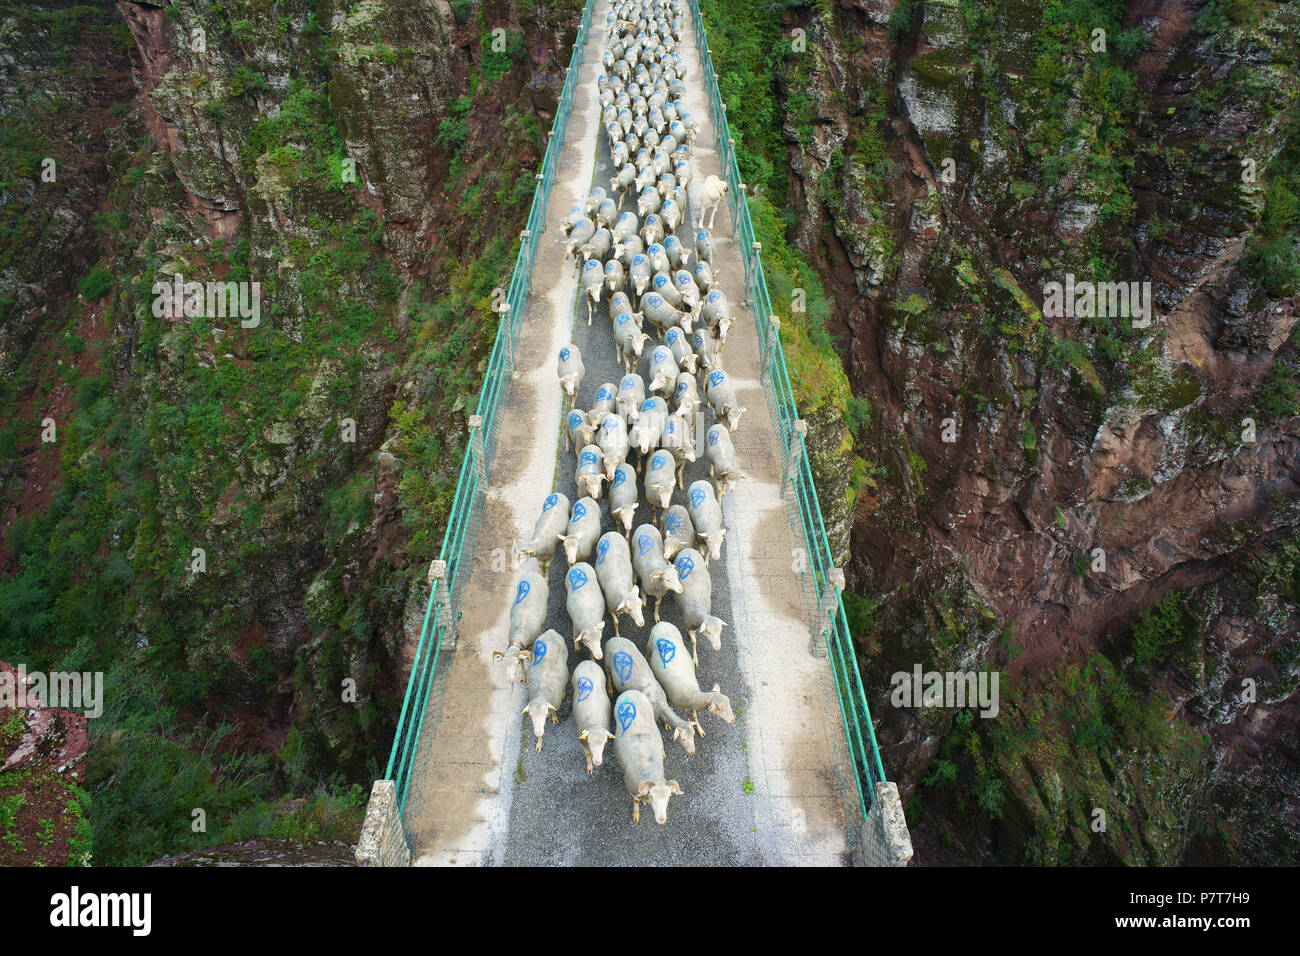 LUFTAUFNAHME von einem 6 Meter hohen Mast. Transhumanz auf einer Brücke, 80 Meter über dem Canyon-Boden. Gorges de Daluis, Guillaumes, Alpes-Maritimes, Frankreich. Stockfoto